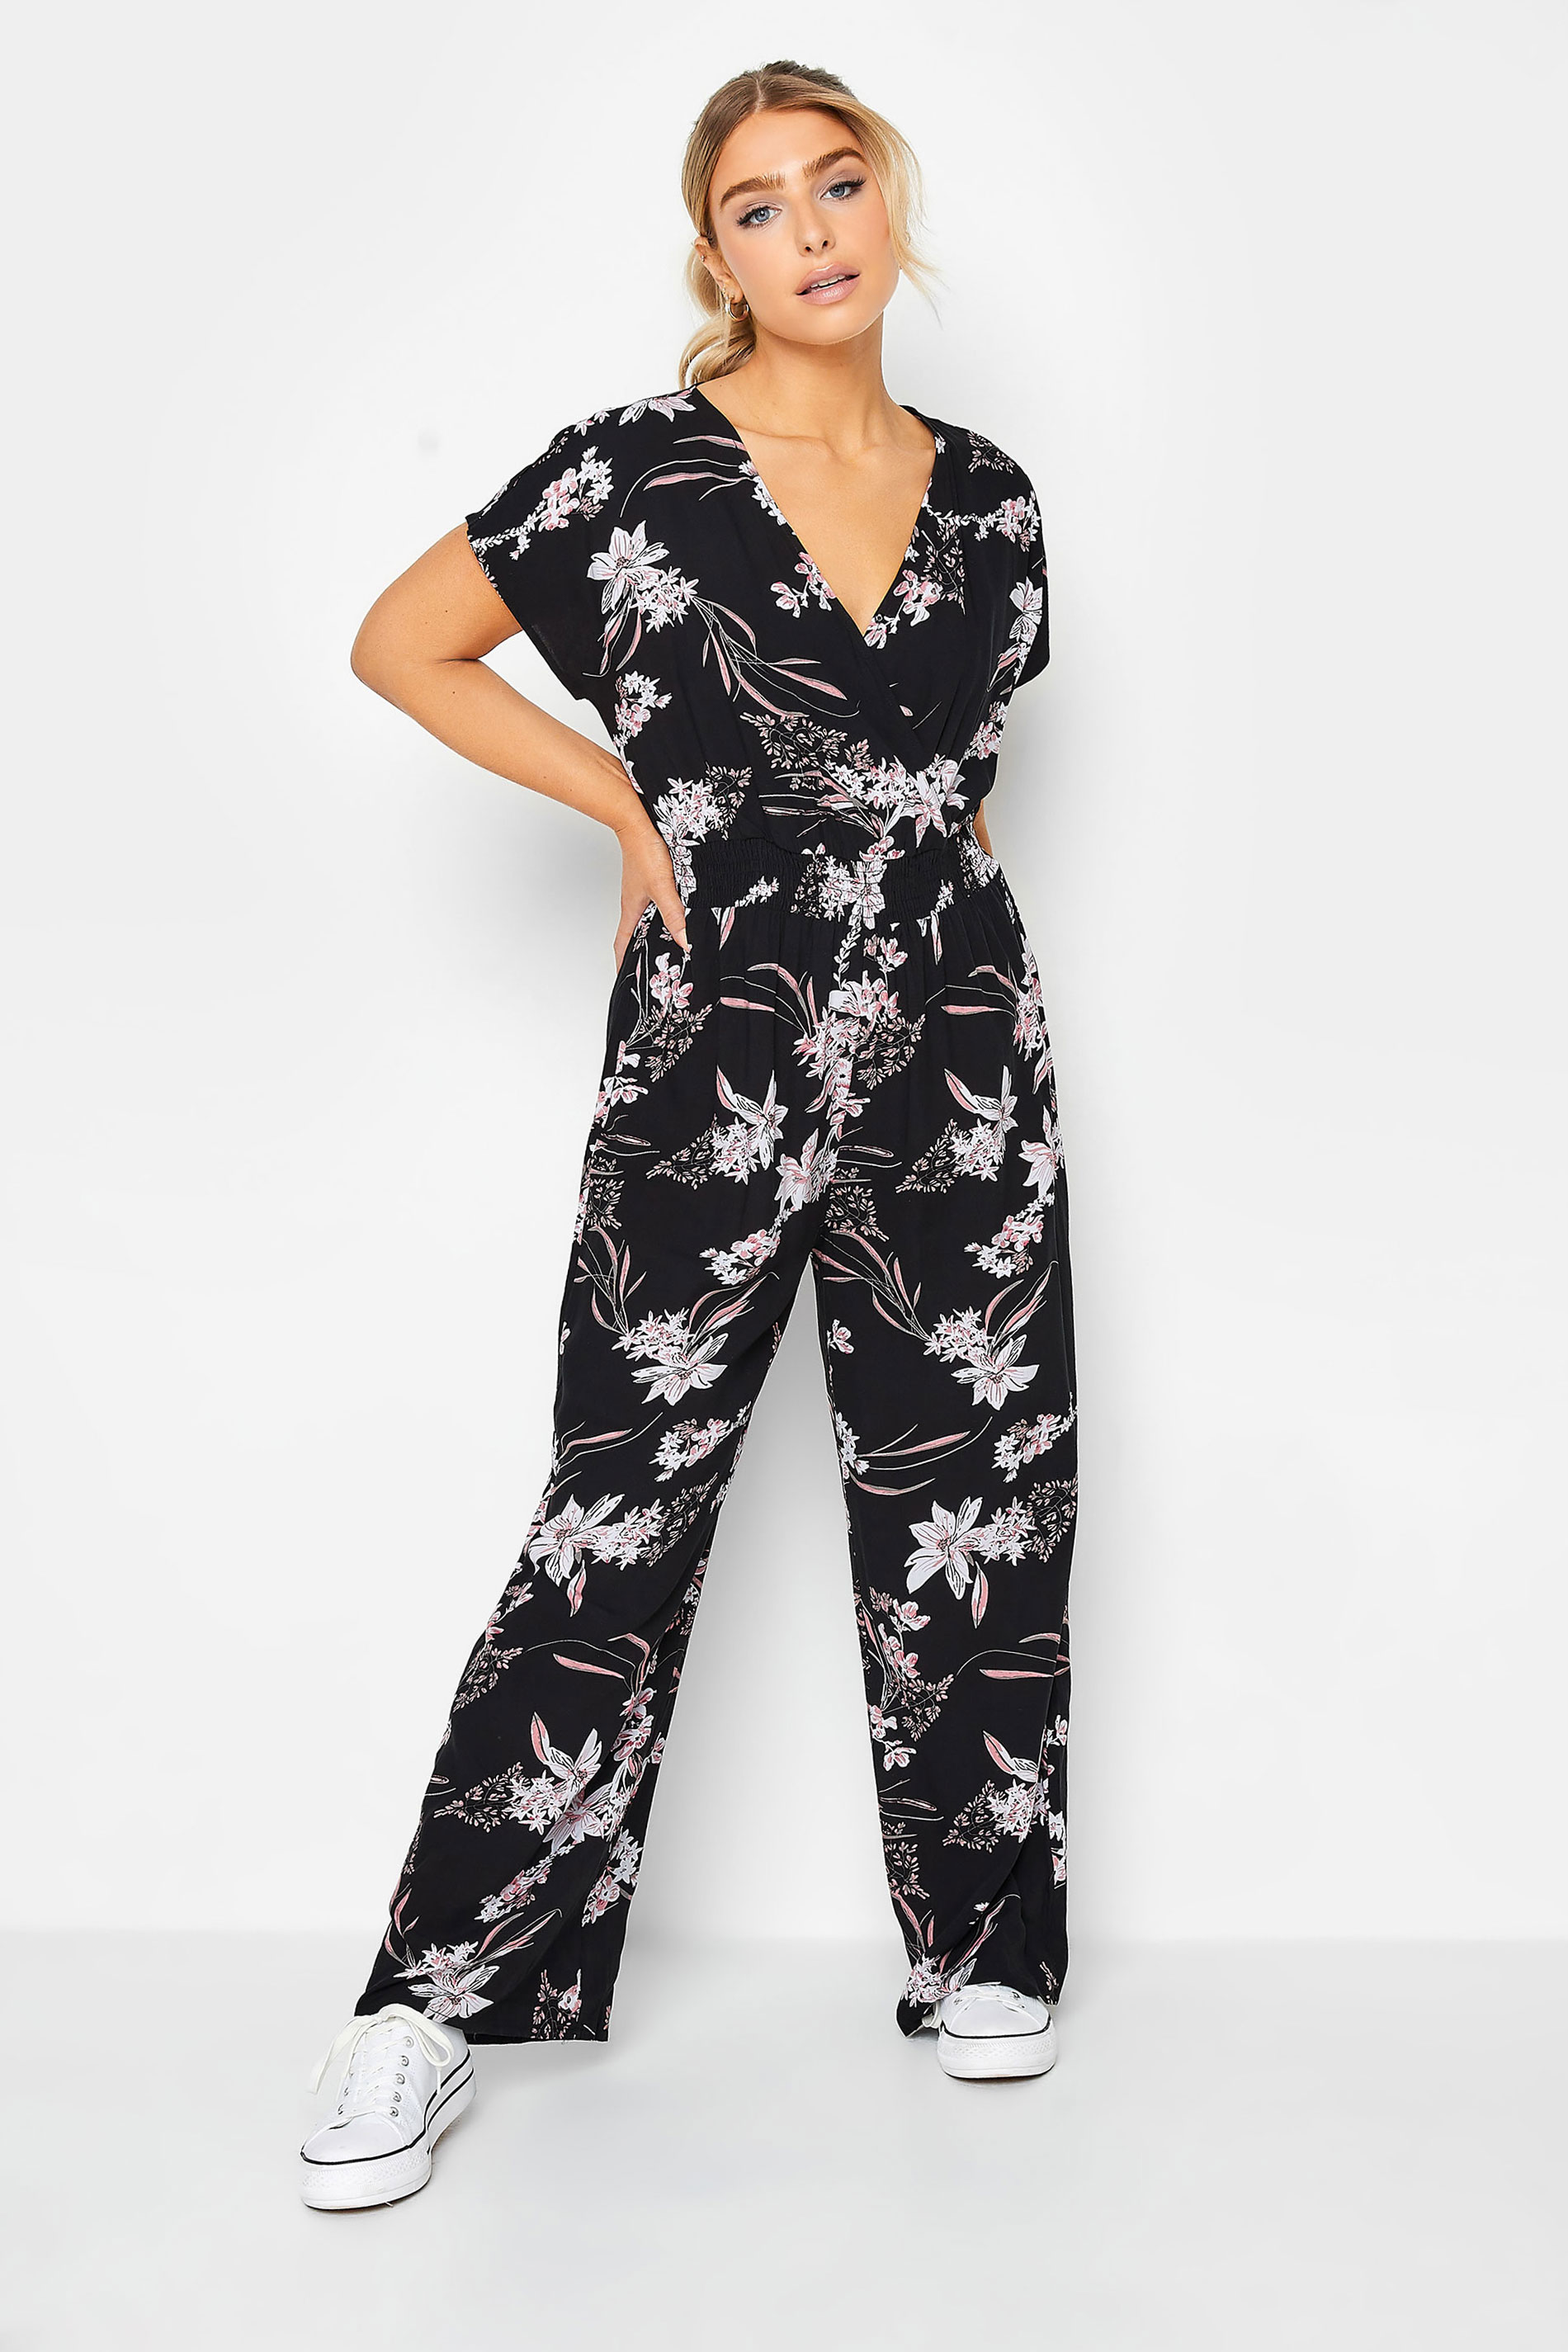 M&Co Black Floral Wrap Jumpsuit | M&Co 1